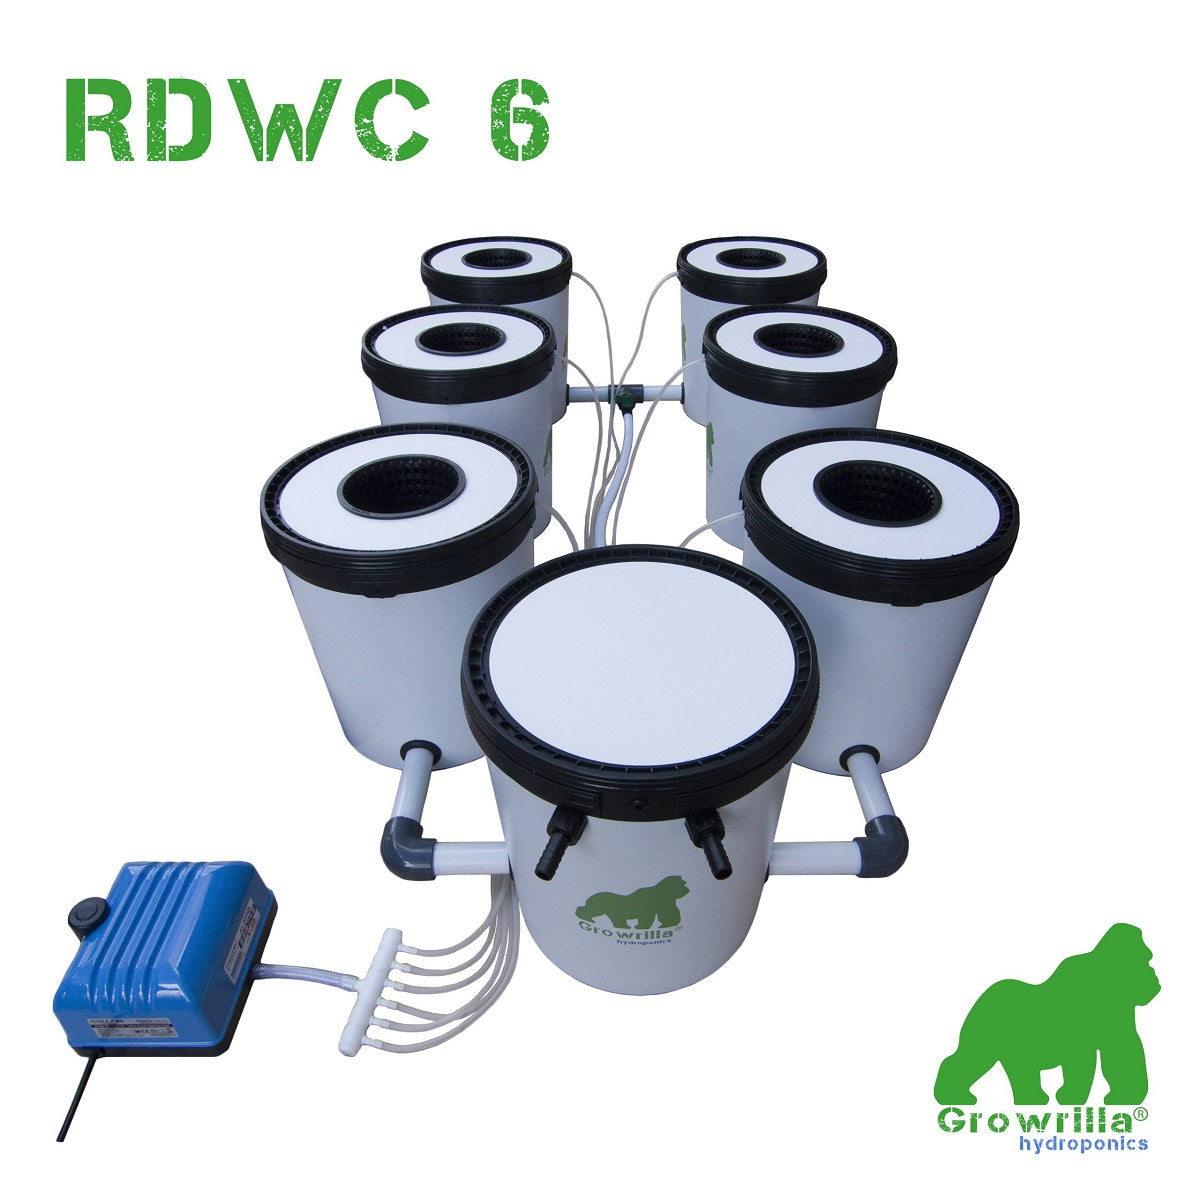 Le kit de culture Hydroponique Growrilla RDWC 6 pour tente de culture de 150x150x200cm